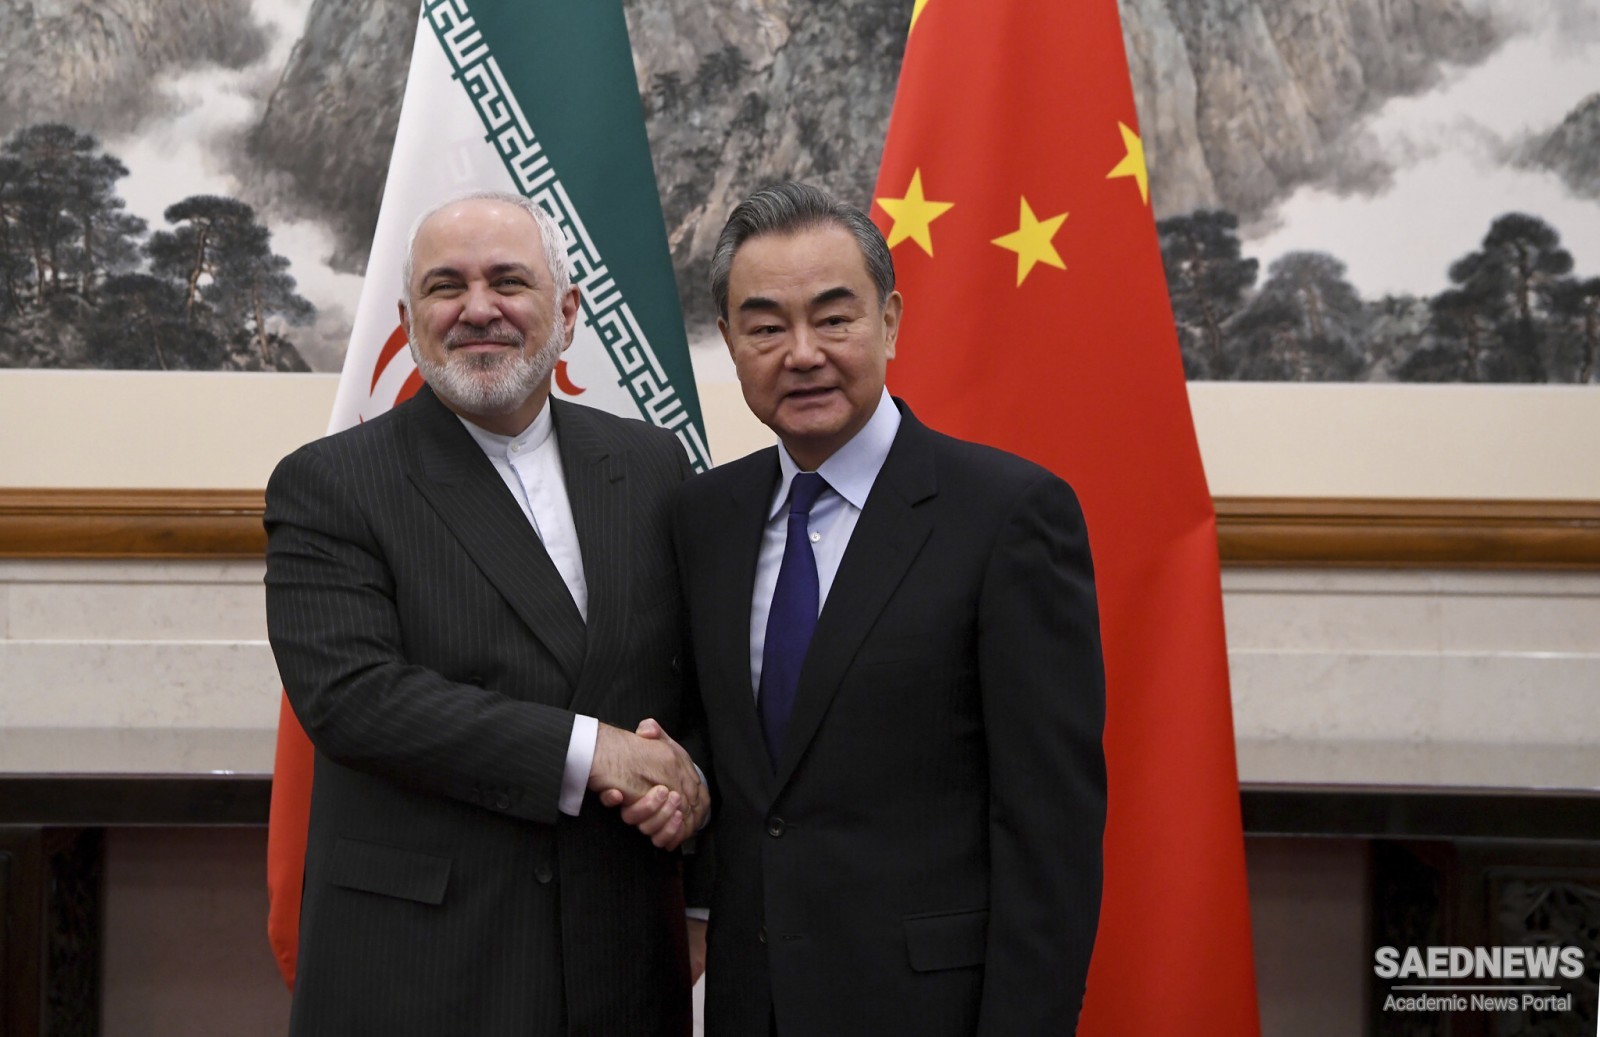 ईरान और चीन ने एक द्विपक्षीय  रणनीतिक  समझौते पर हस्ताक्षर किये